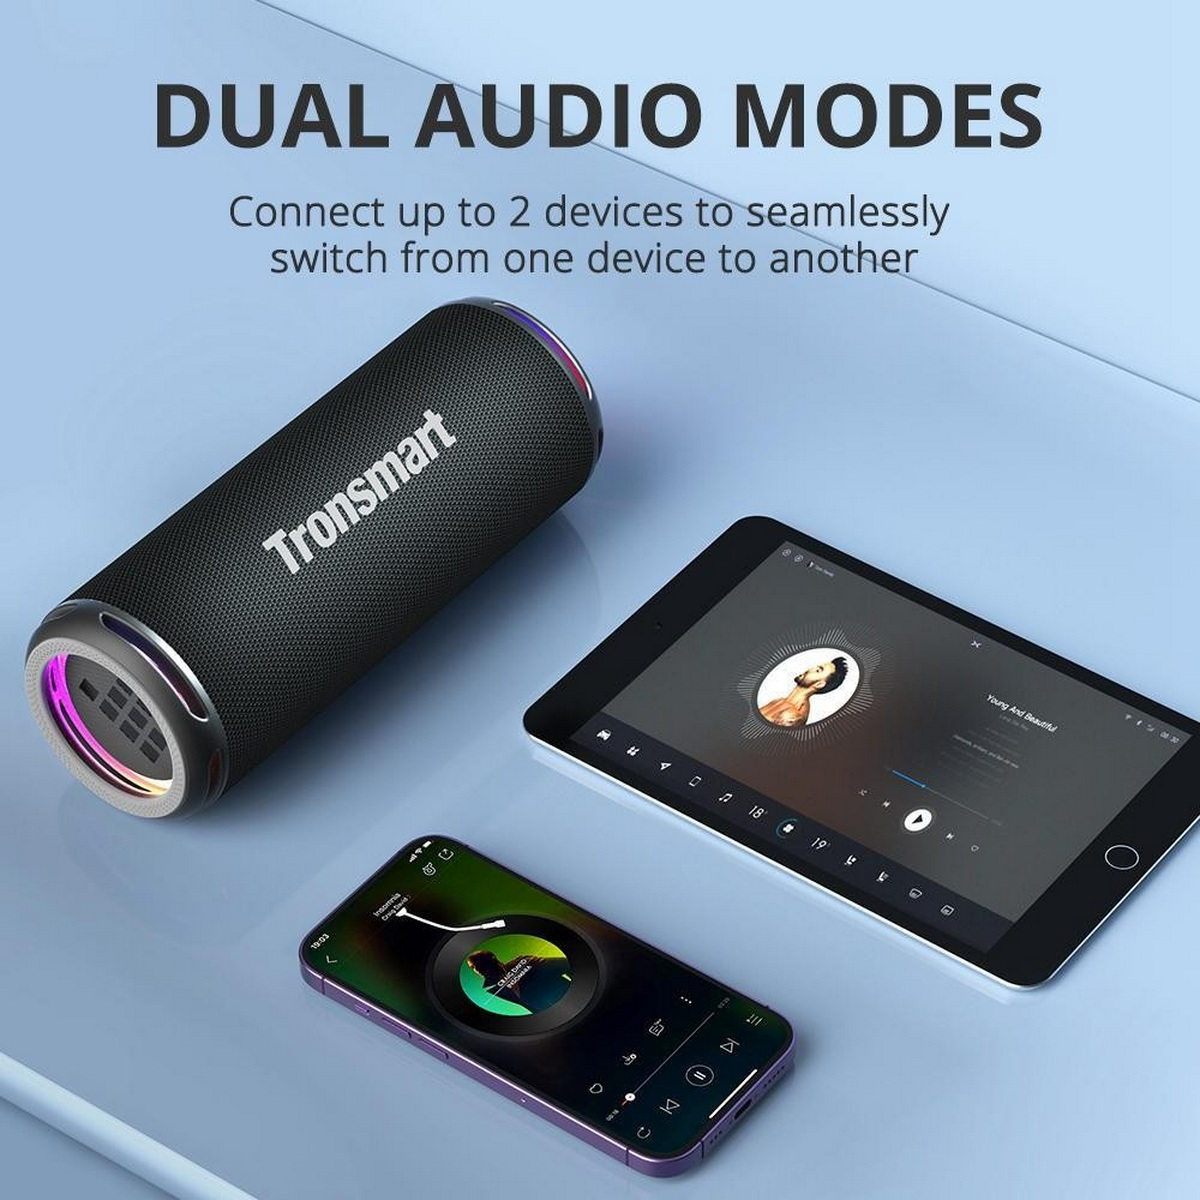 TRONSMART T7 schwarz Lite Bluetooth-Lautsprecher,